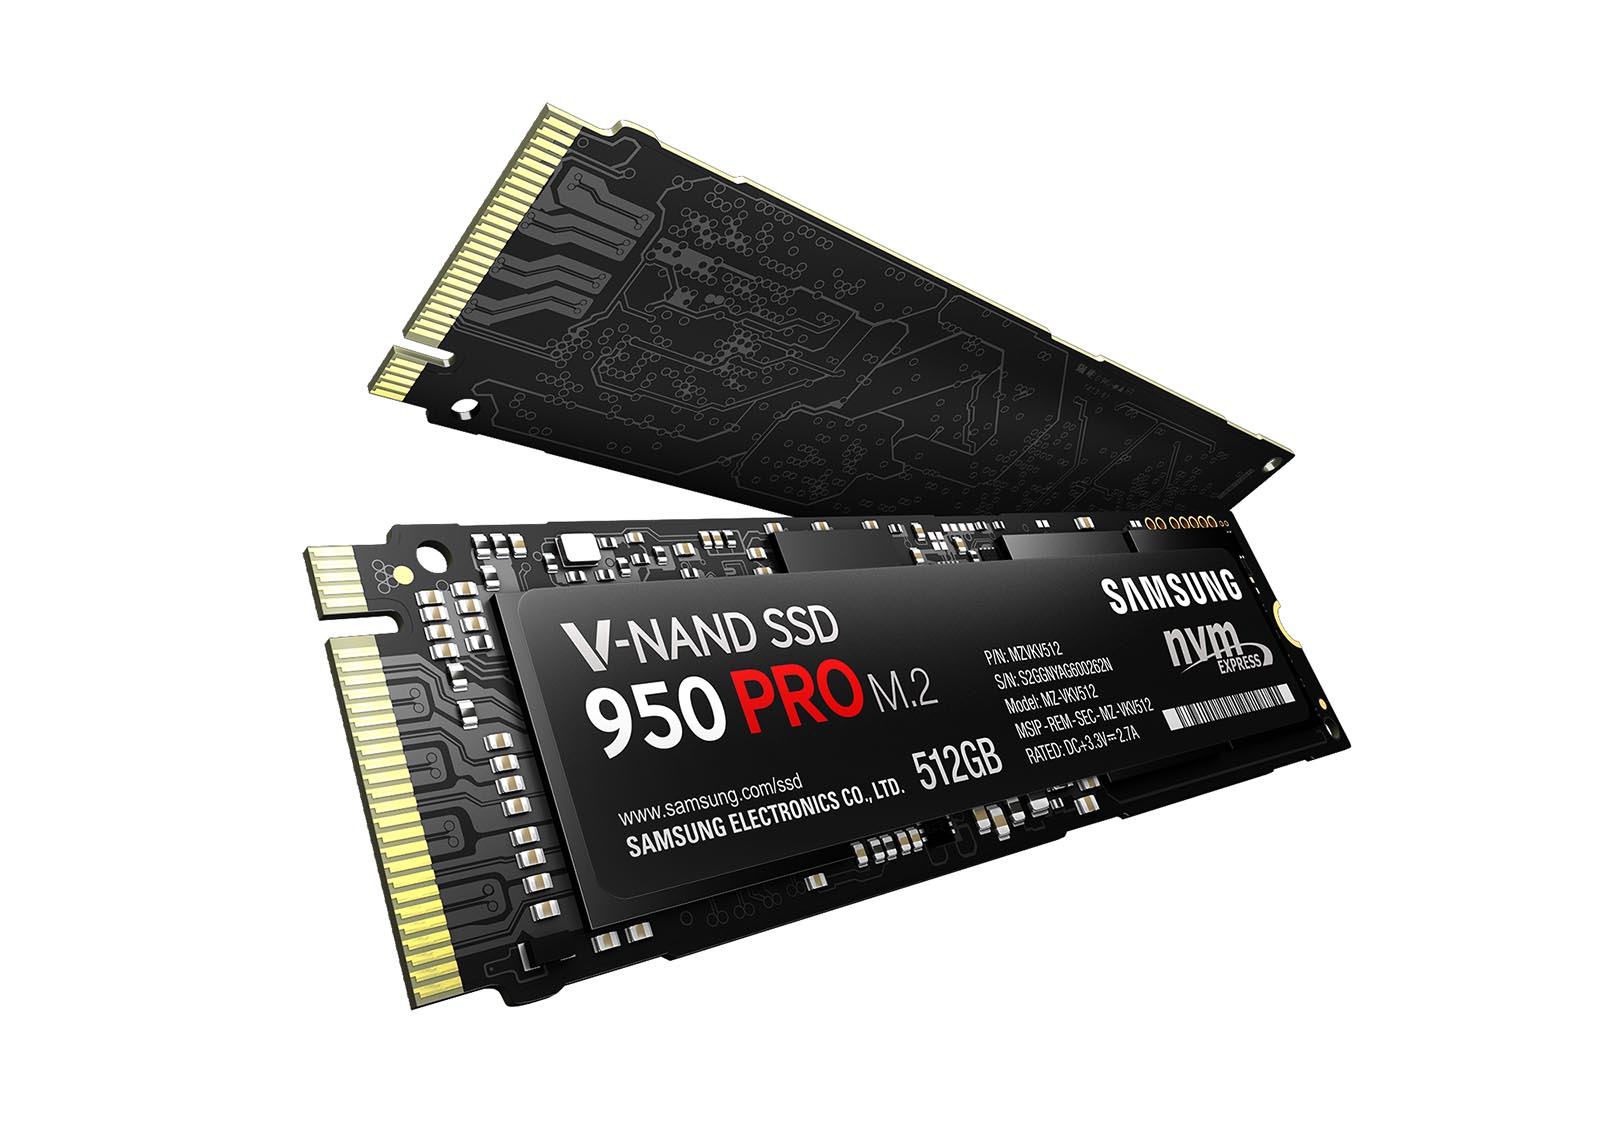 Samsung SSD 950 Pro 256 GB Heatspreader